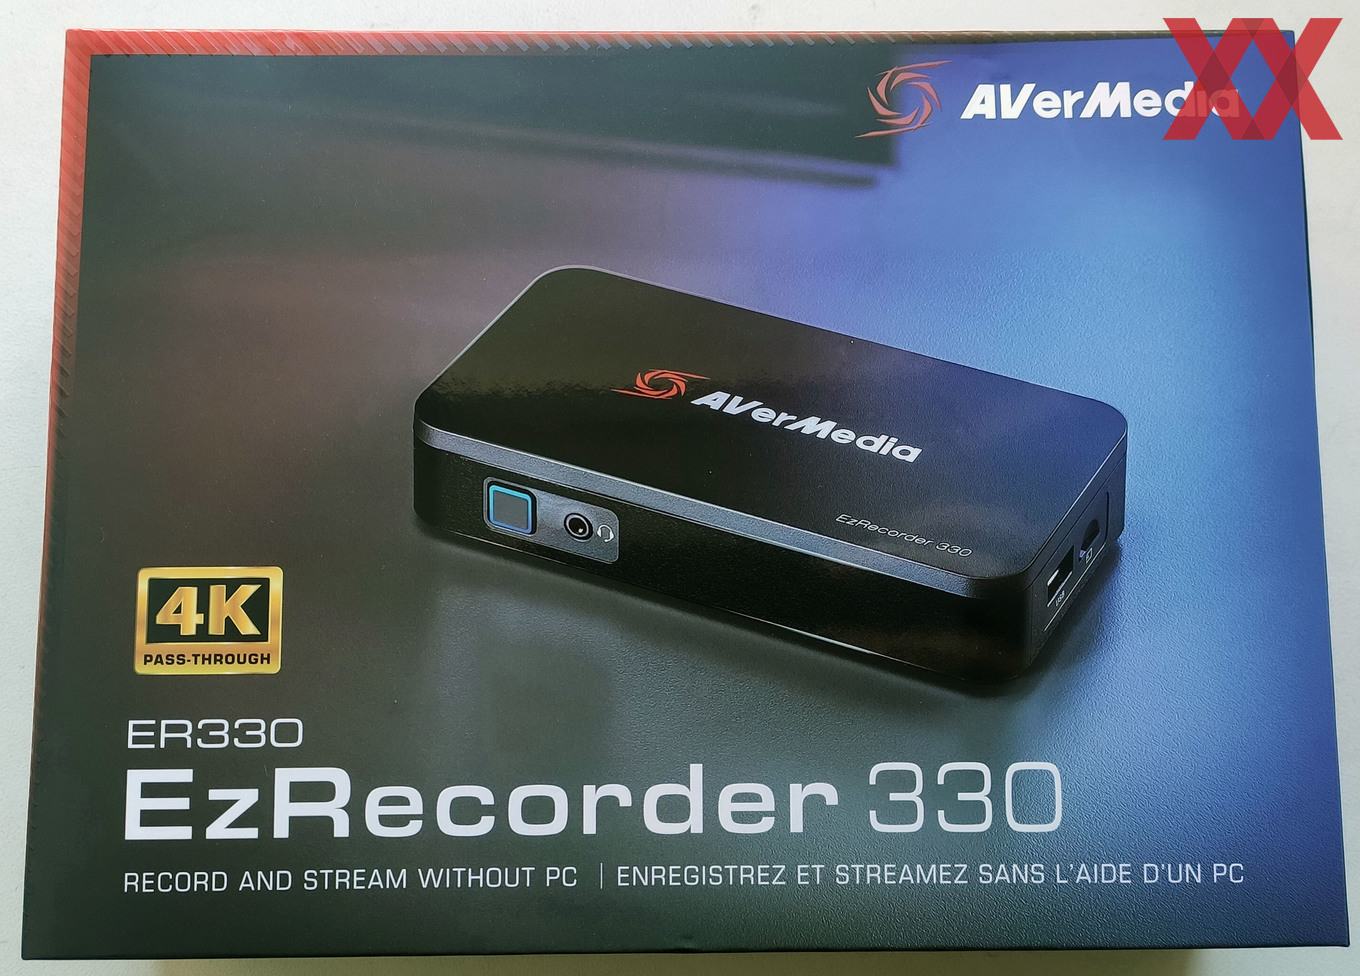 特価品蔵出し特集 AVerMedia ER330 330 EzRecorder PCパーツ